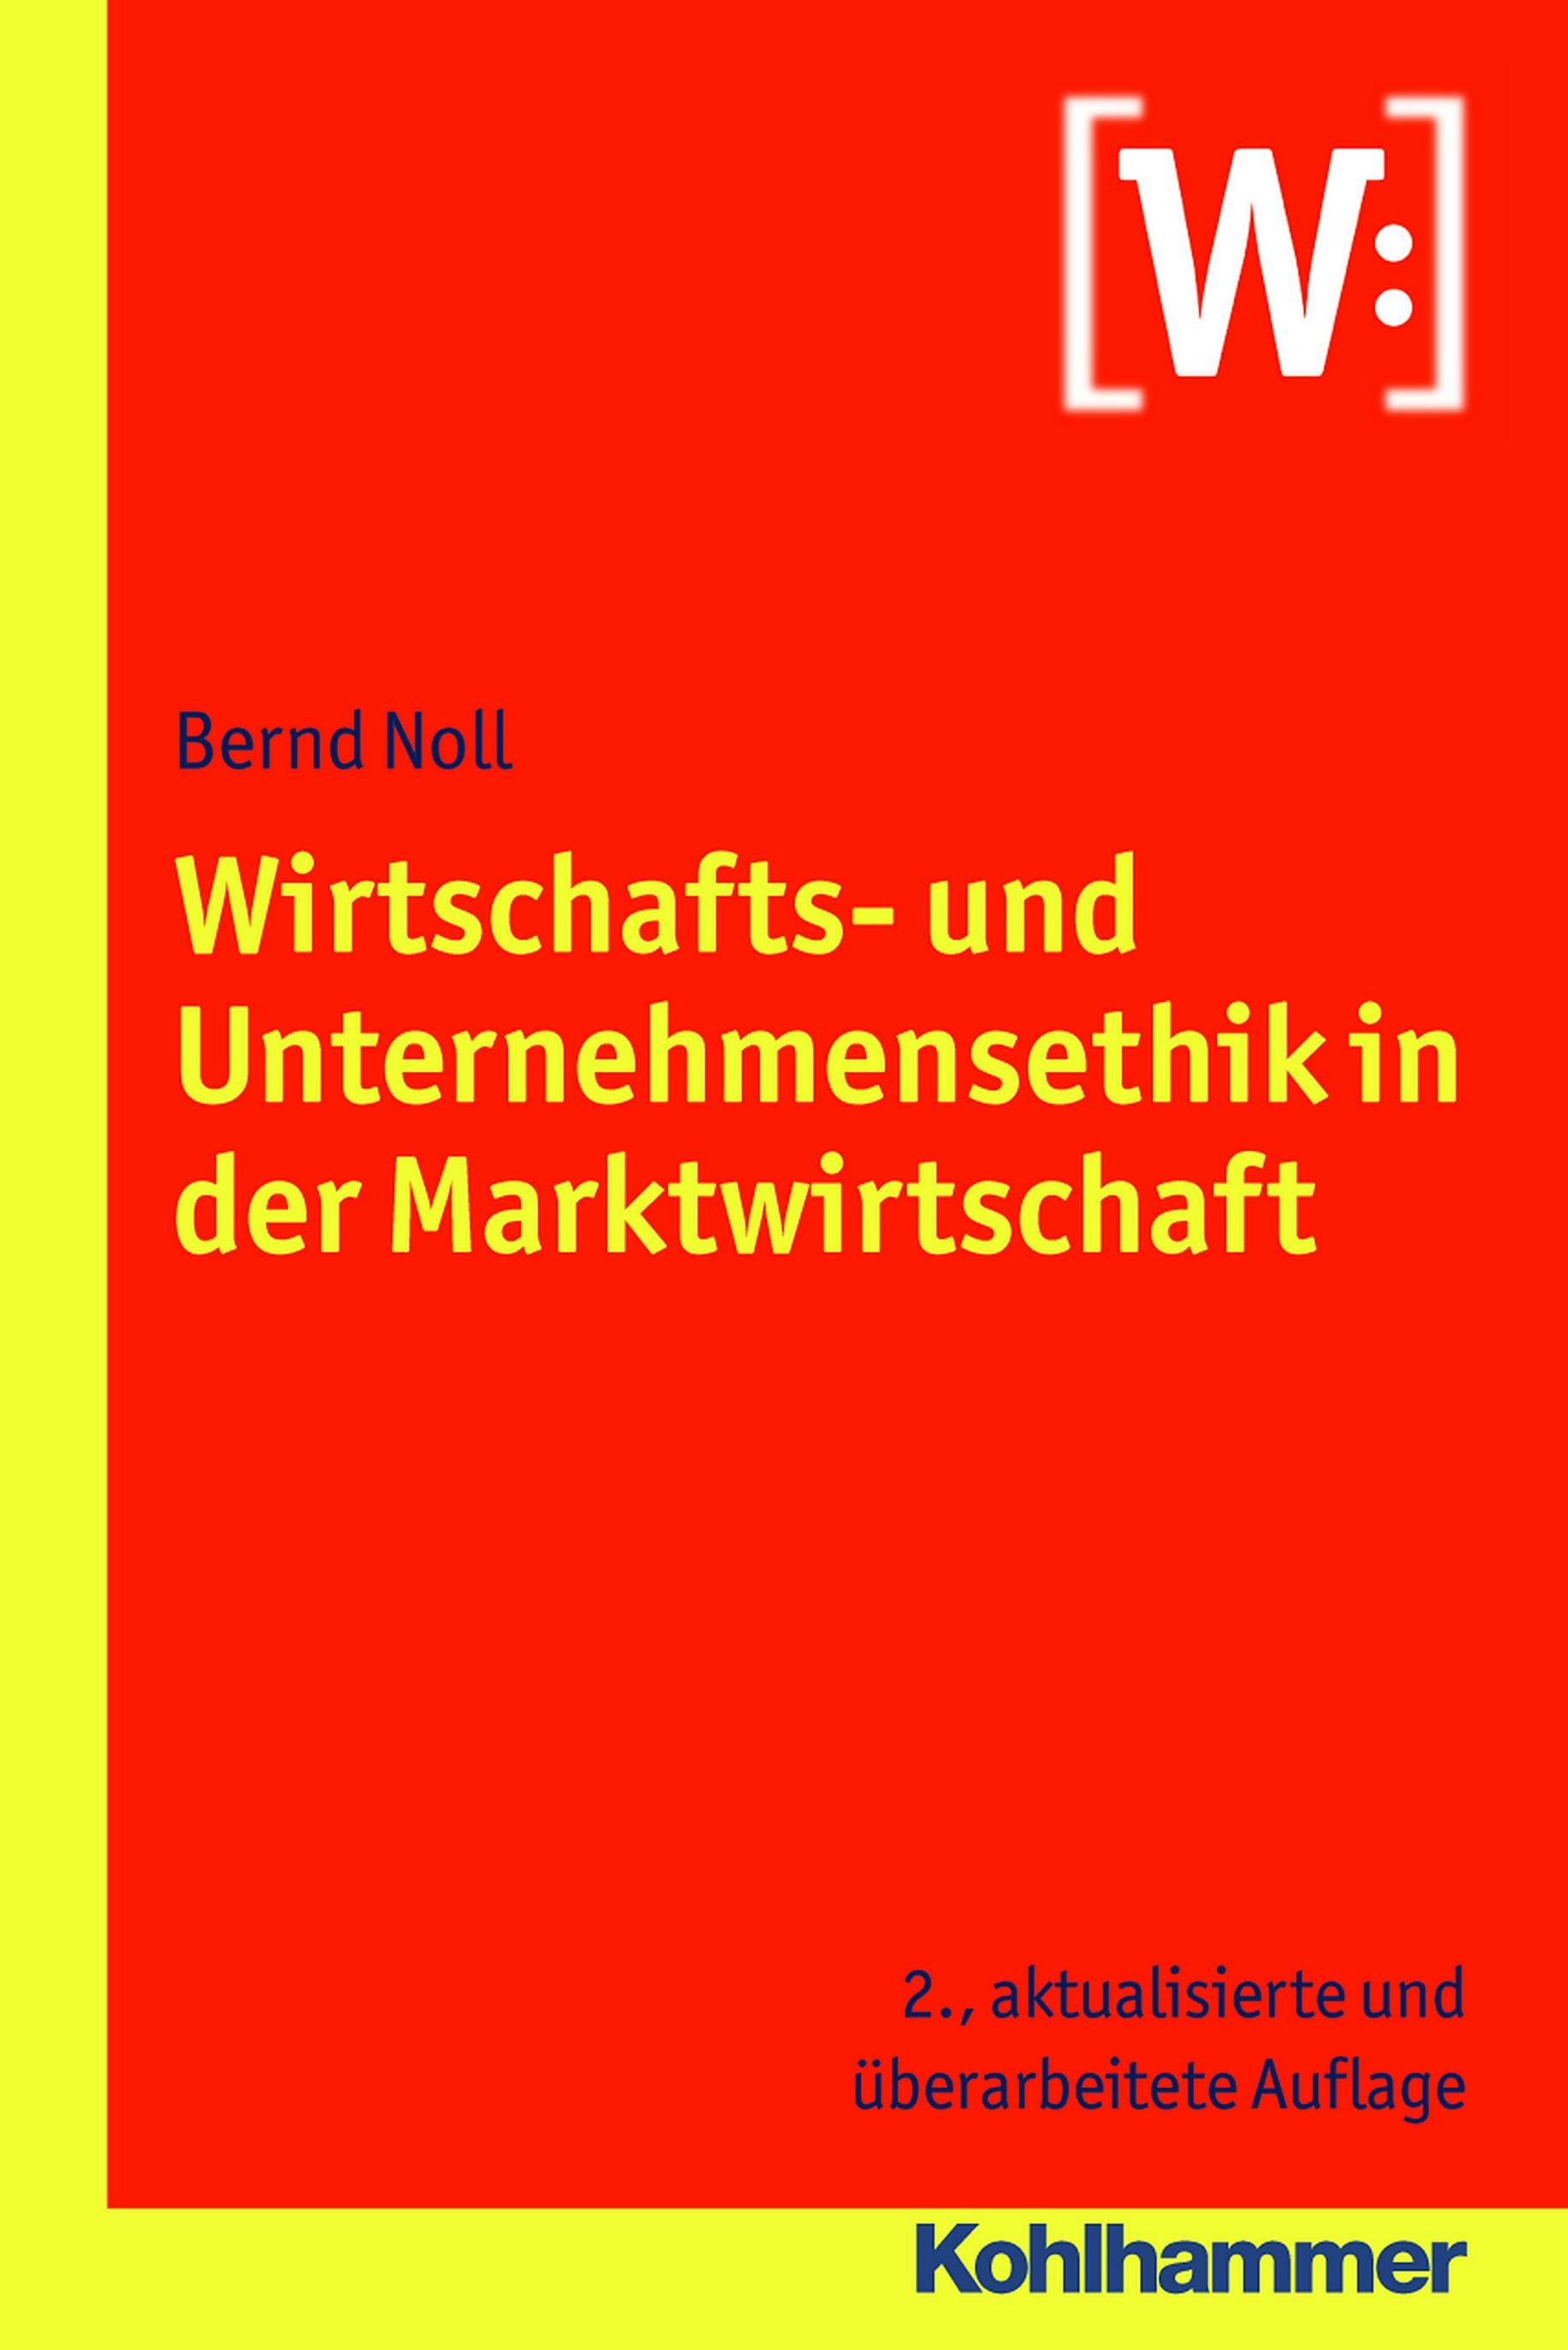 Wirtschafts- und Unternehmensethik in der Marktwirtschaft - Bernd Noll